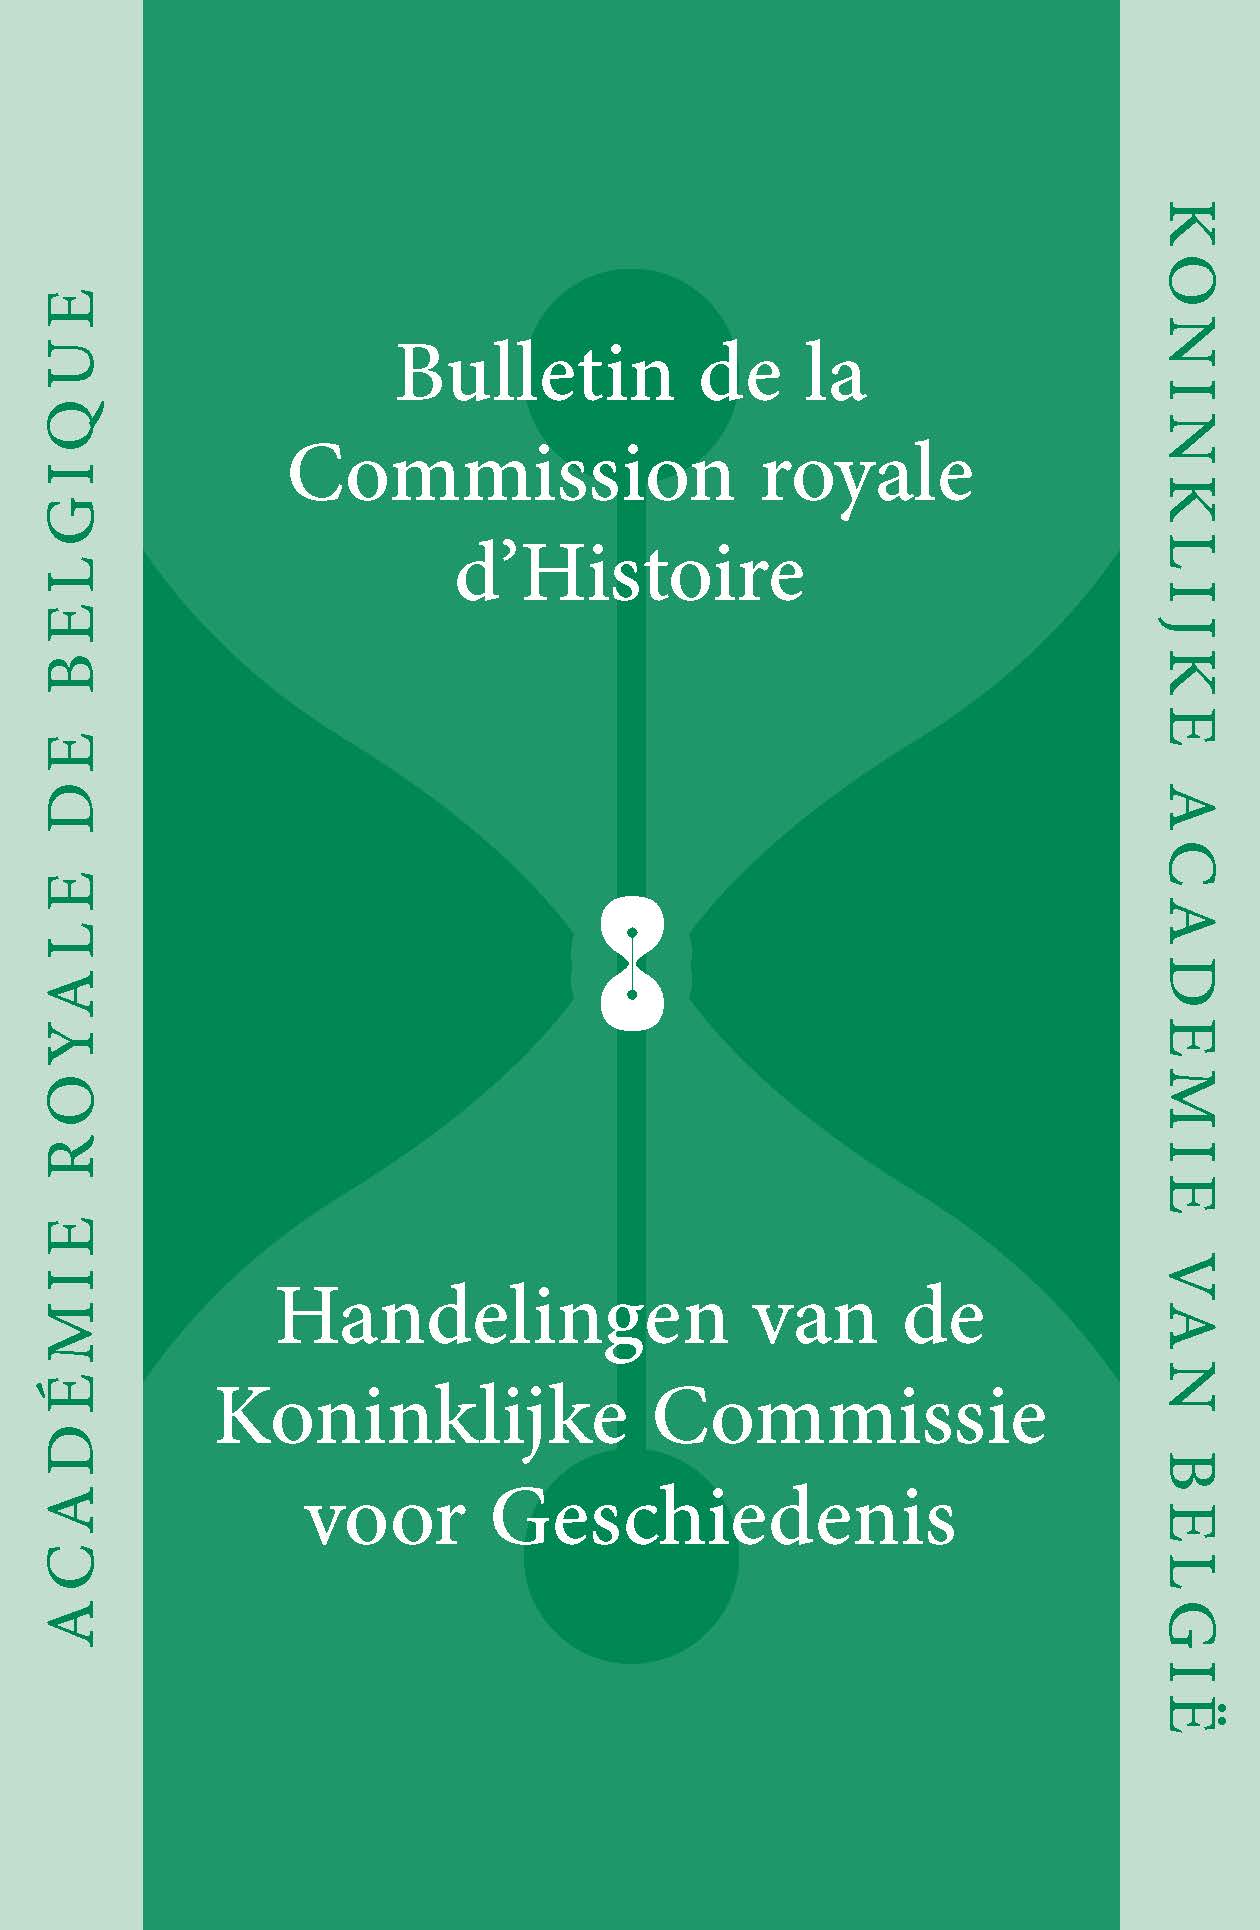 HANDELINGEN VAN DE KONINKLIJKE COMMISSIE VOOR GESCHIEDENIS/BULLETIN, vol. 178, 2012 (kcg)